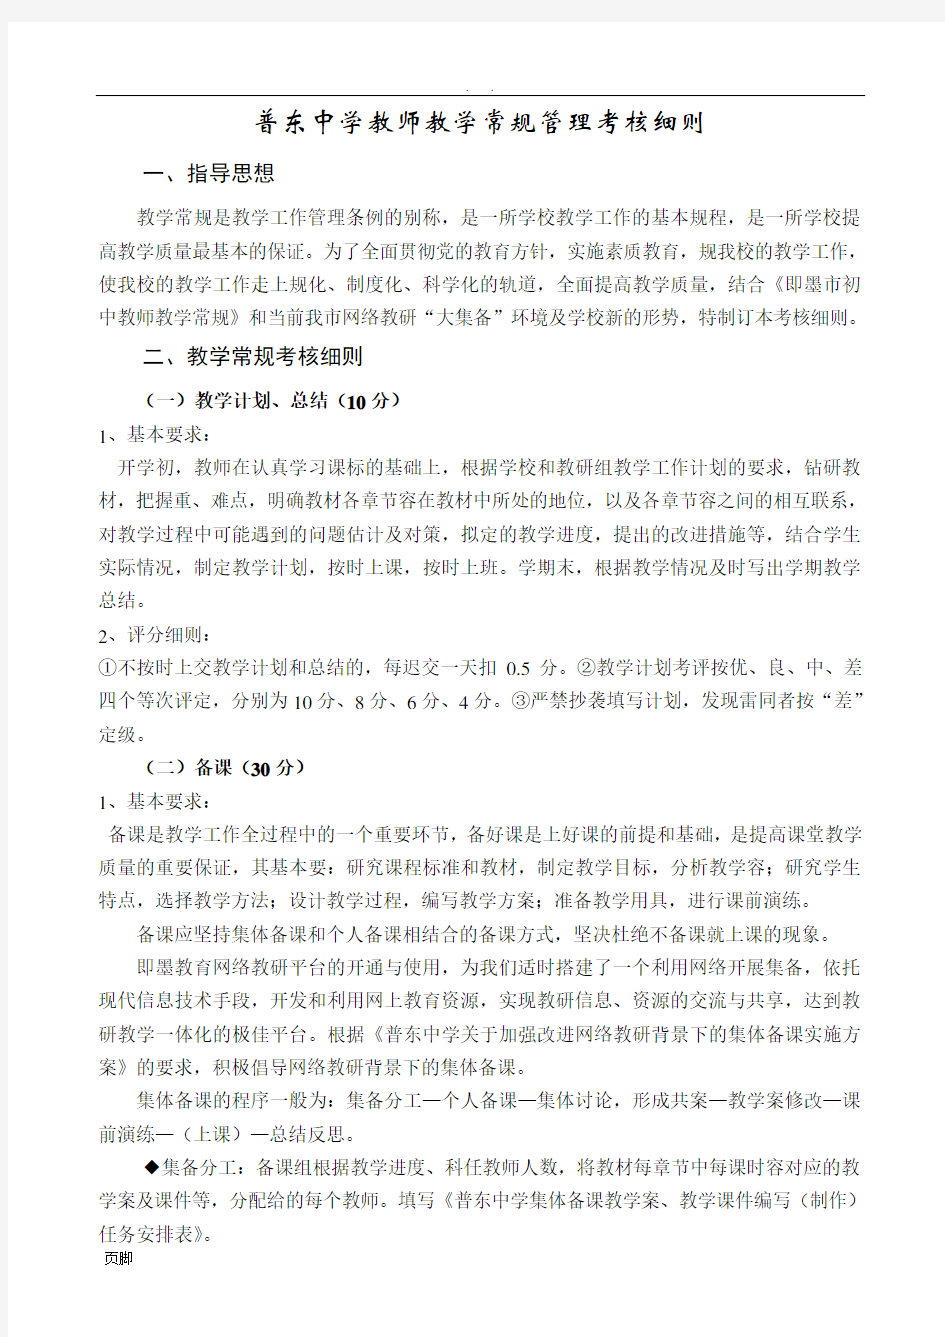 普东中学教师教学常规管理考核细则2012.10